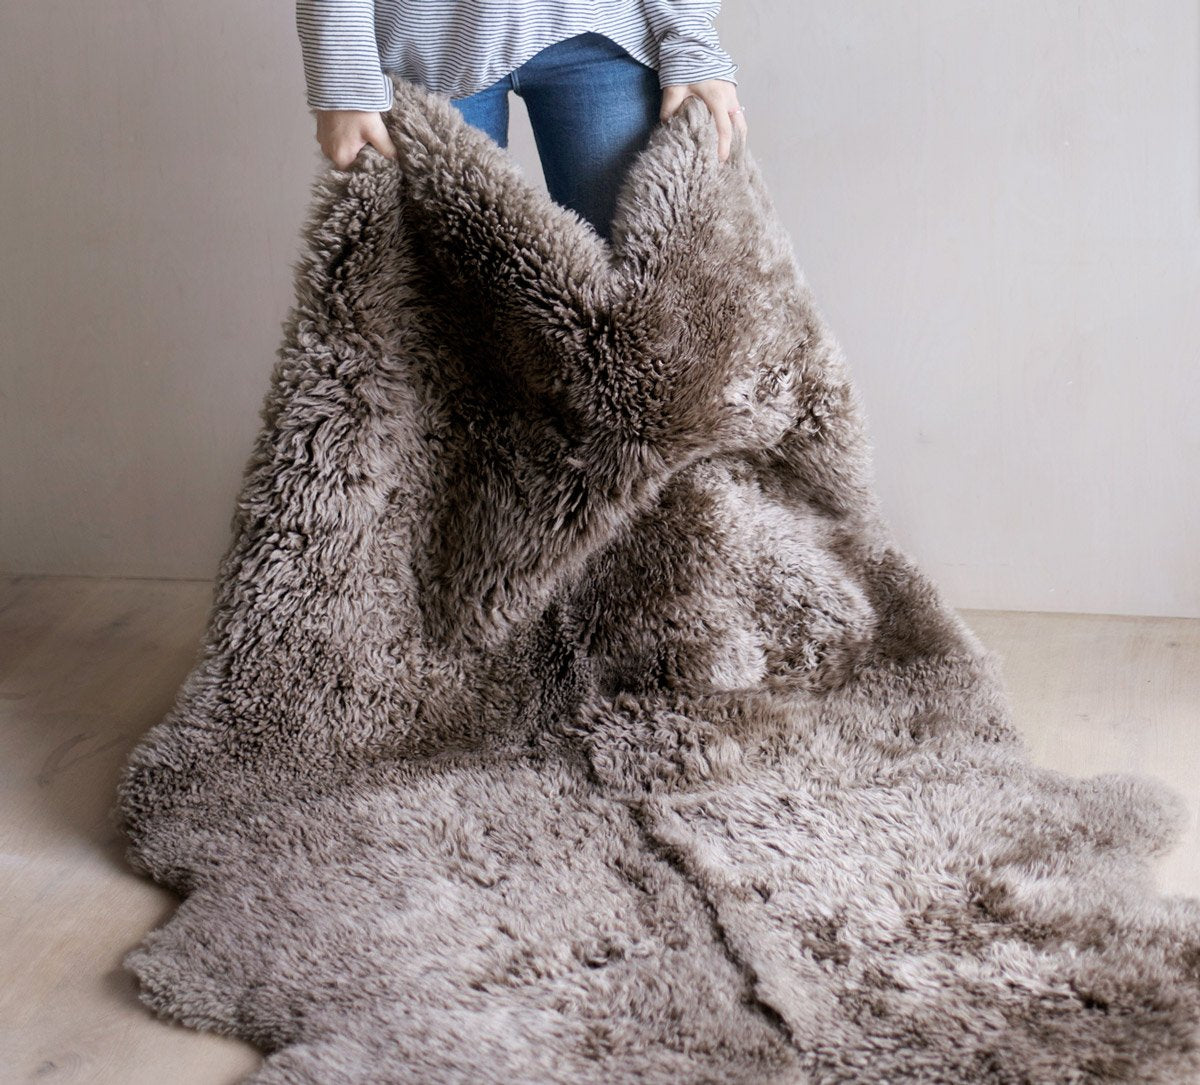 Icelandic White Sheepskin Fur Throw Blanket + Reviews